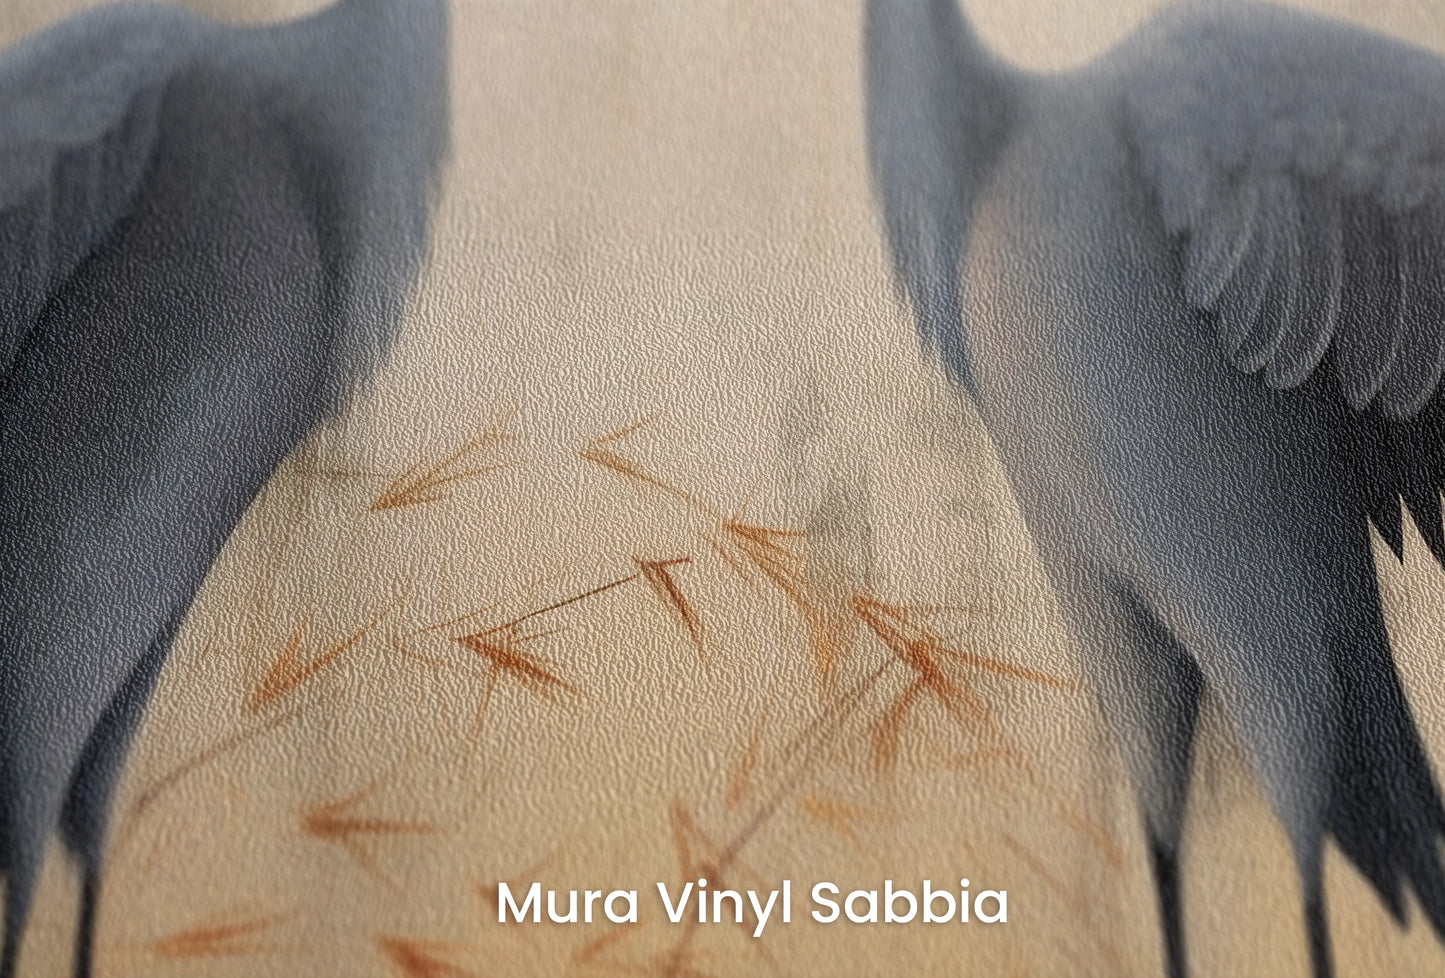 Zbliżenie na artystyczną fototapetę o nazwie Tranquil Symphony na podłożu Mura Vinyl Sabbia struktura grubego ziarna piasku.